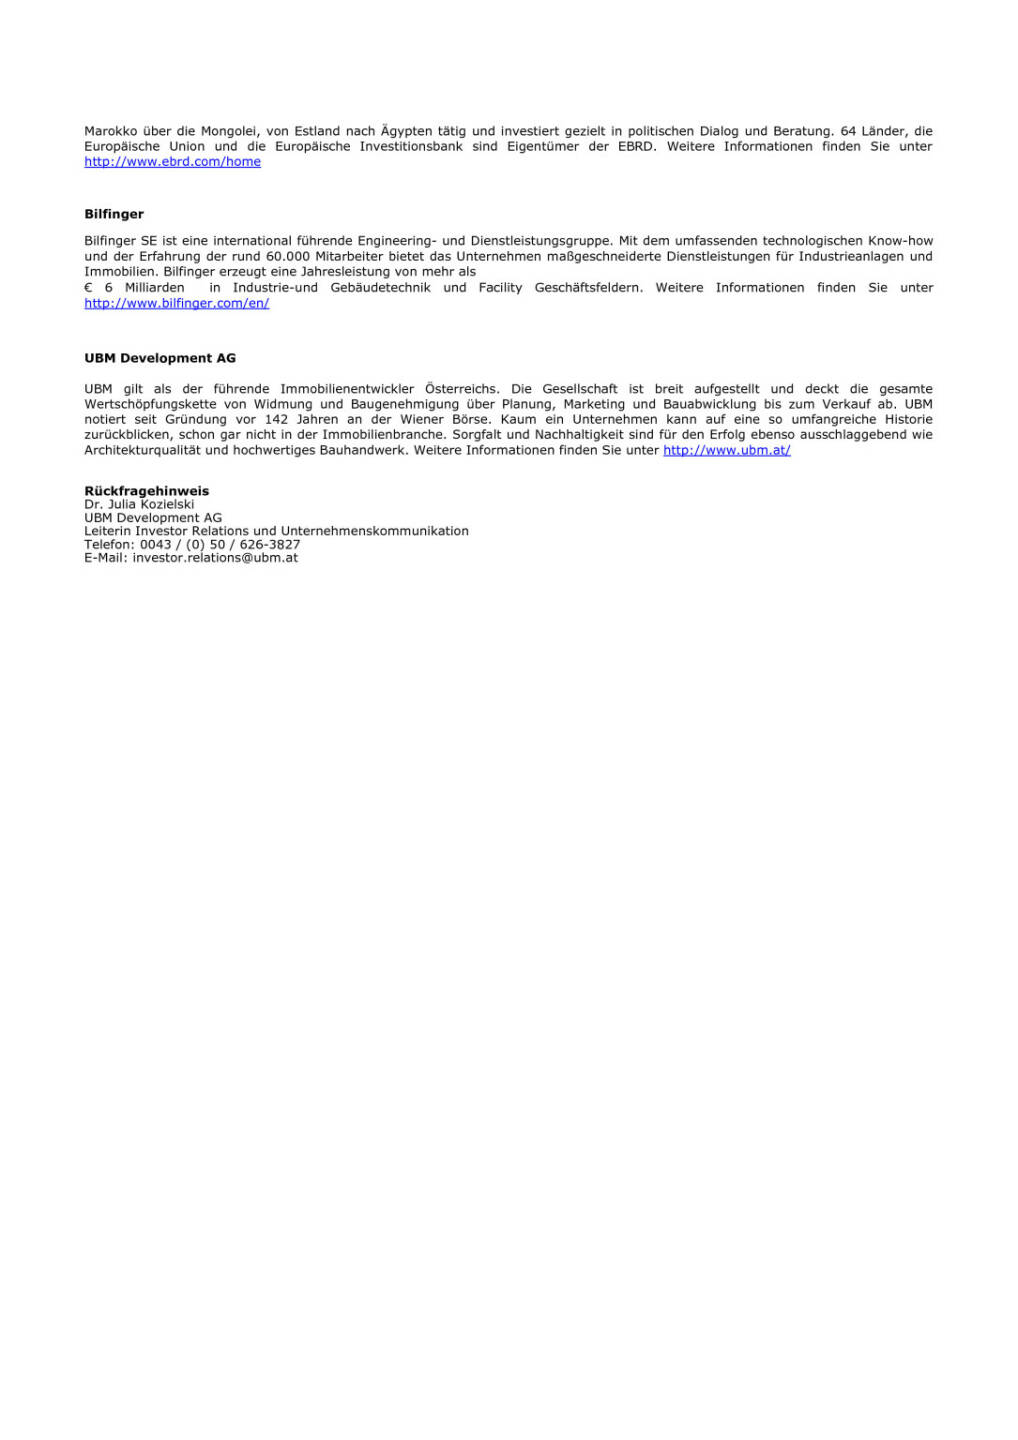 UBM verkauft ihre Beteiligungen an zwei ungarischen Autobahn-Konzessionsgesellschaften, Seite 2/2, komplettes Dokument unter http://boerse-social.com/static/uploads/file_538_ubm_verkauft_ihre_beteiligungen_an_zwei_ungarischen_autobahn-konzessionsgesellschaften.pdf